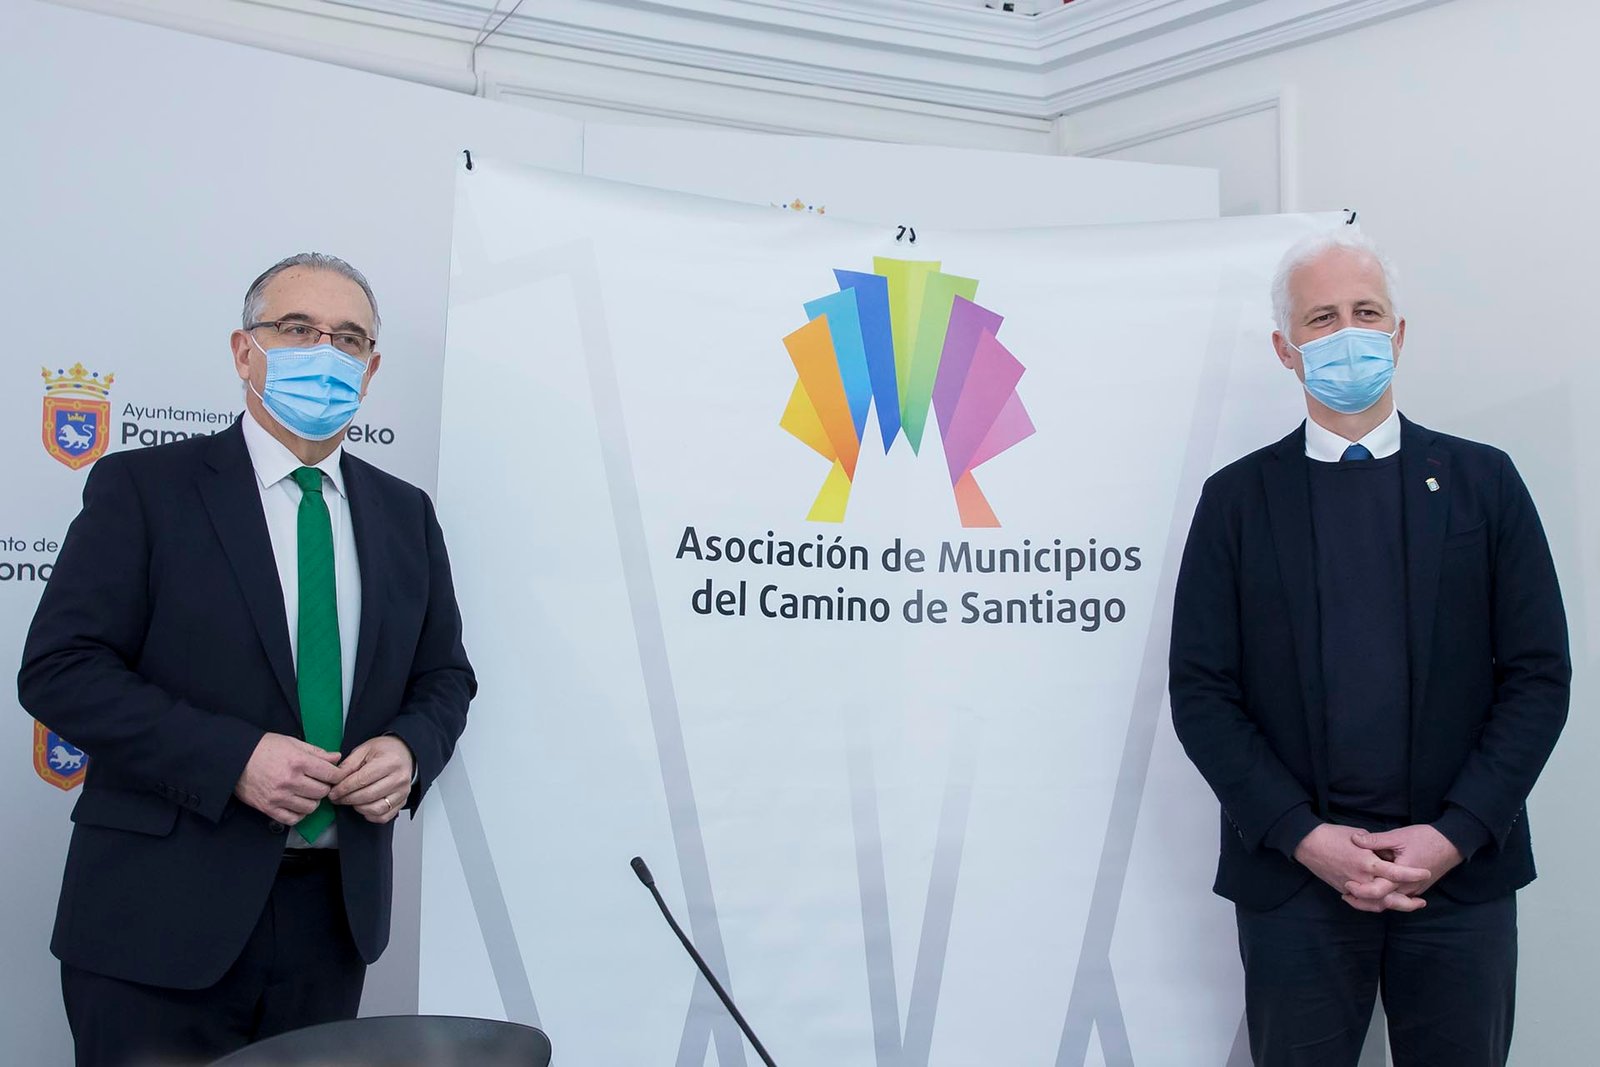 La Asociación de Municipios del Camino de Santiago, reunida en Pamplona, aborda iniciativas para estar preparados cuando regresen las peregrinaciones